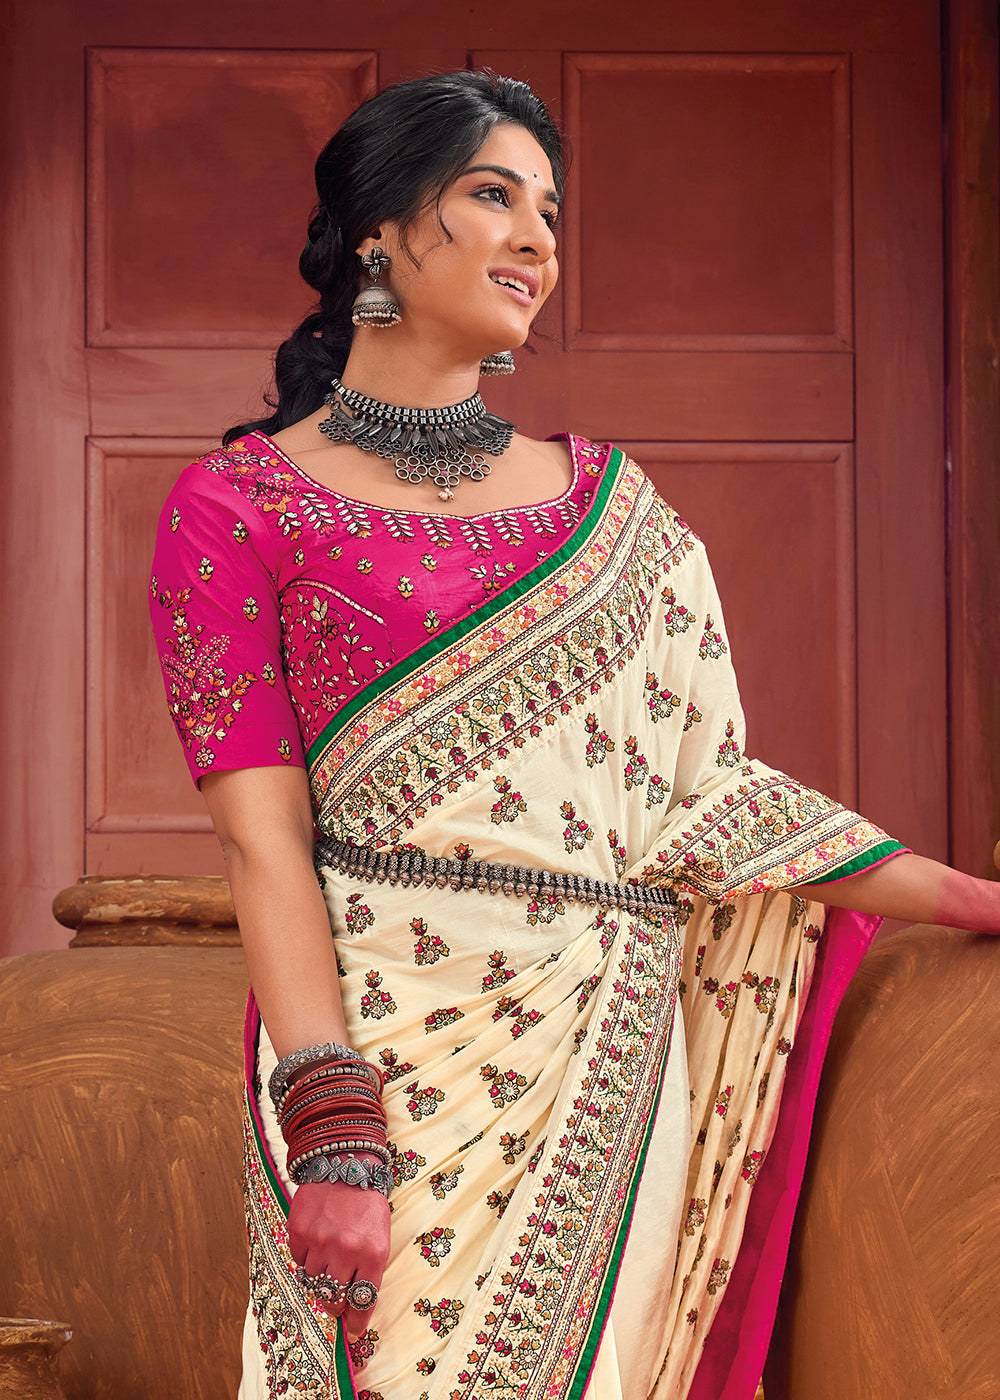 Buy Now Cream Kachhi & Mirror Work Traditional Banarasi Saree Online in USA, UK, Canada & Worldwide at Empress Clothing.